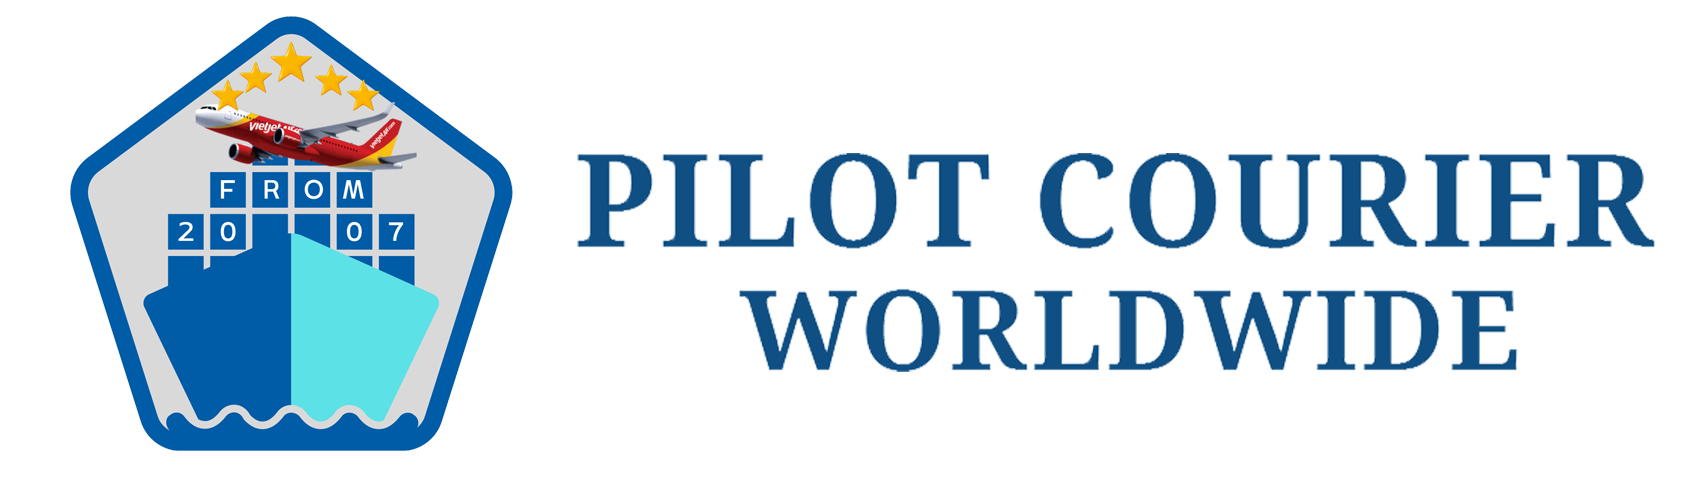 Pilot Courier Ltd